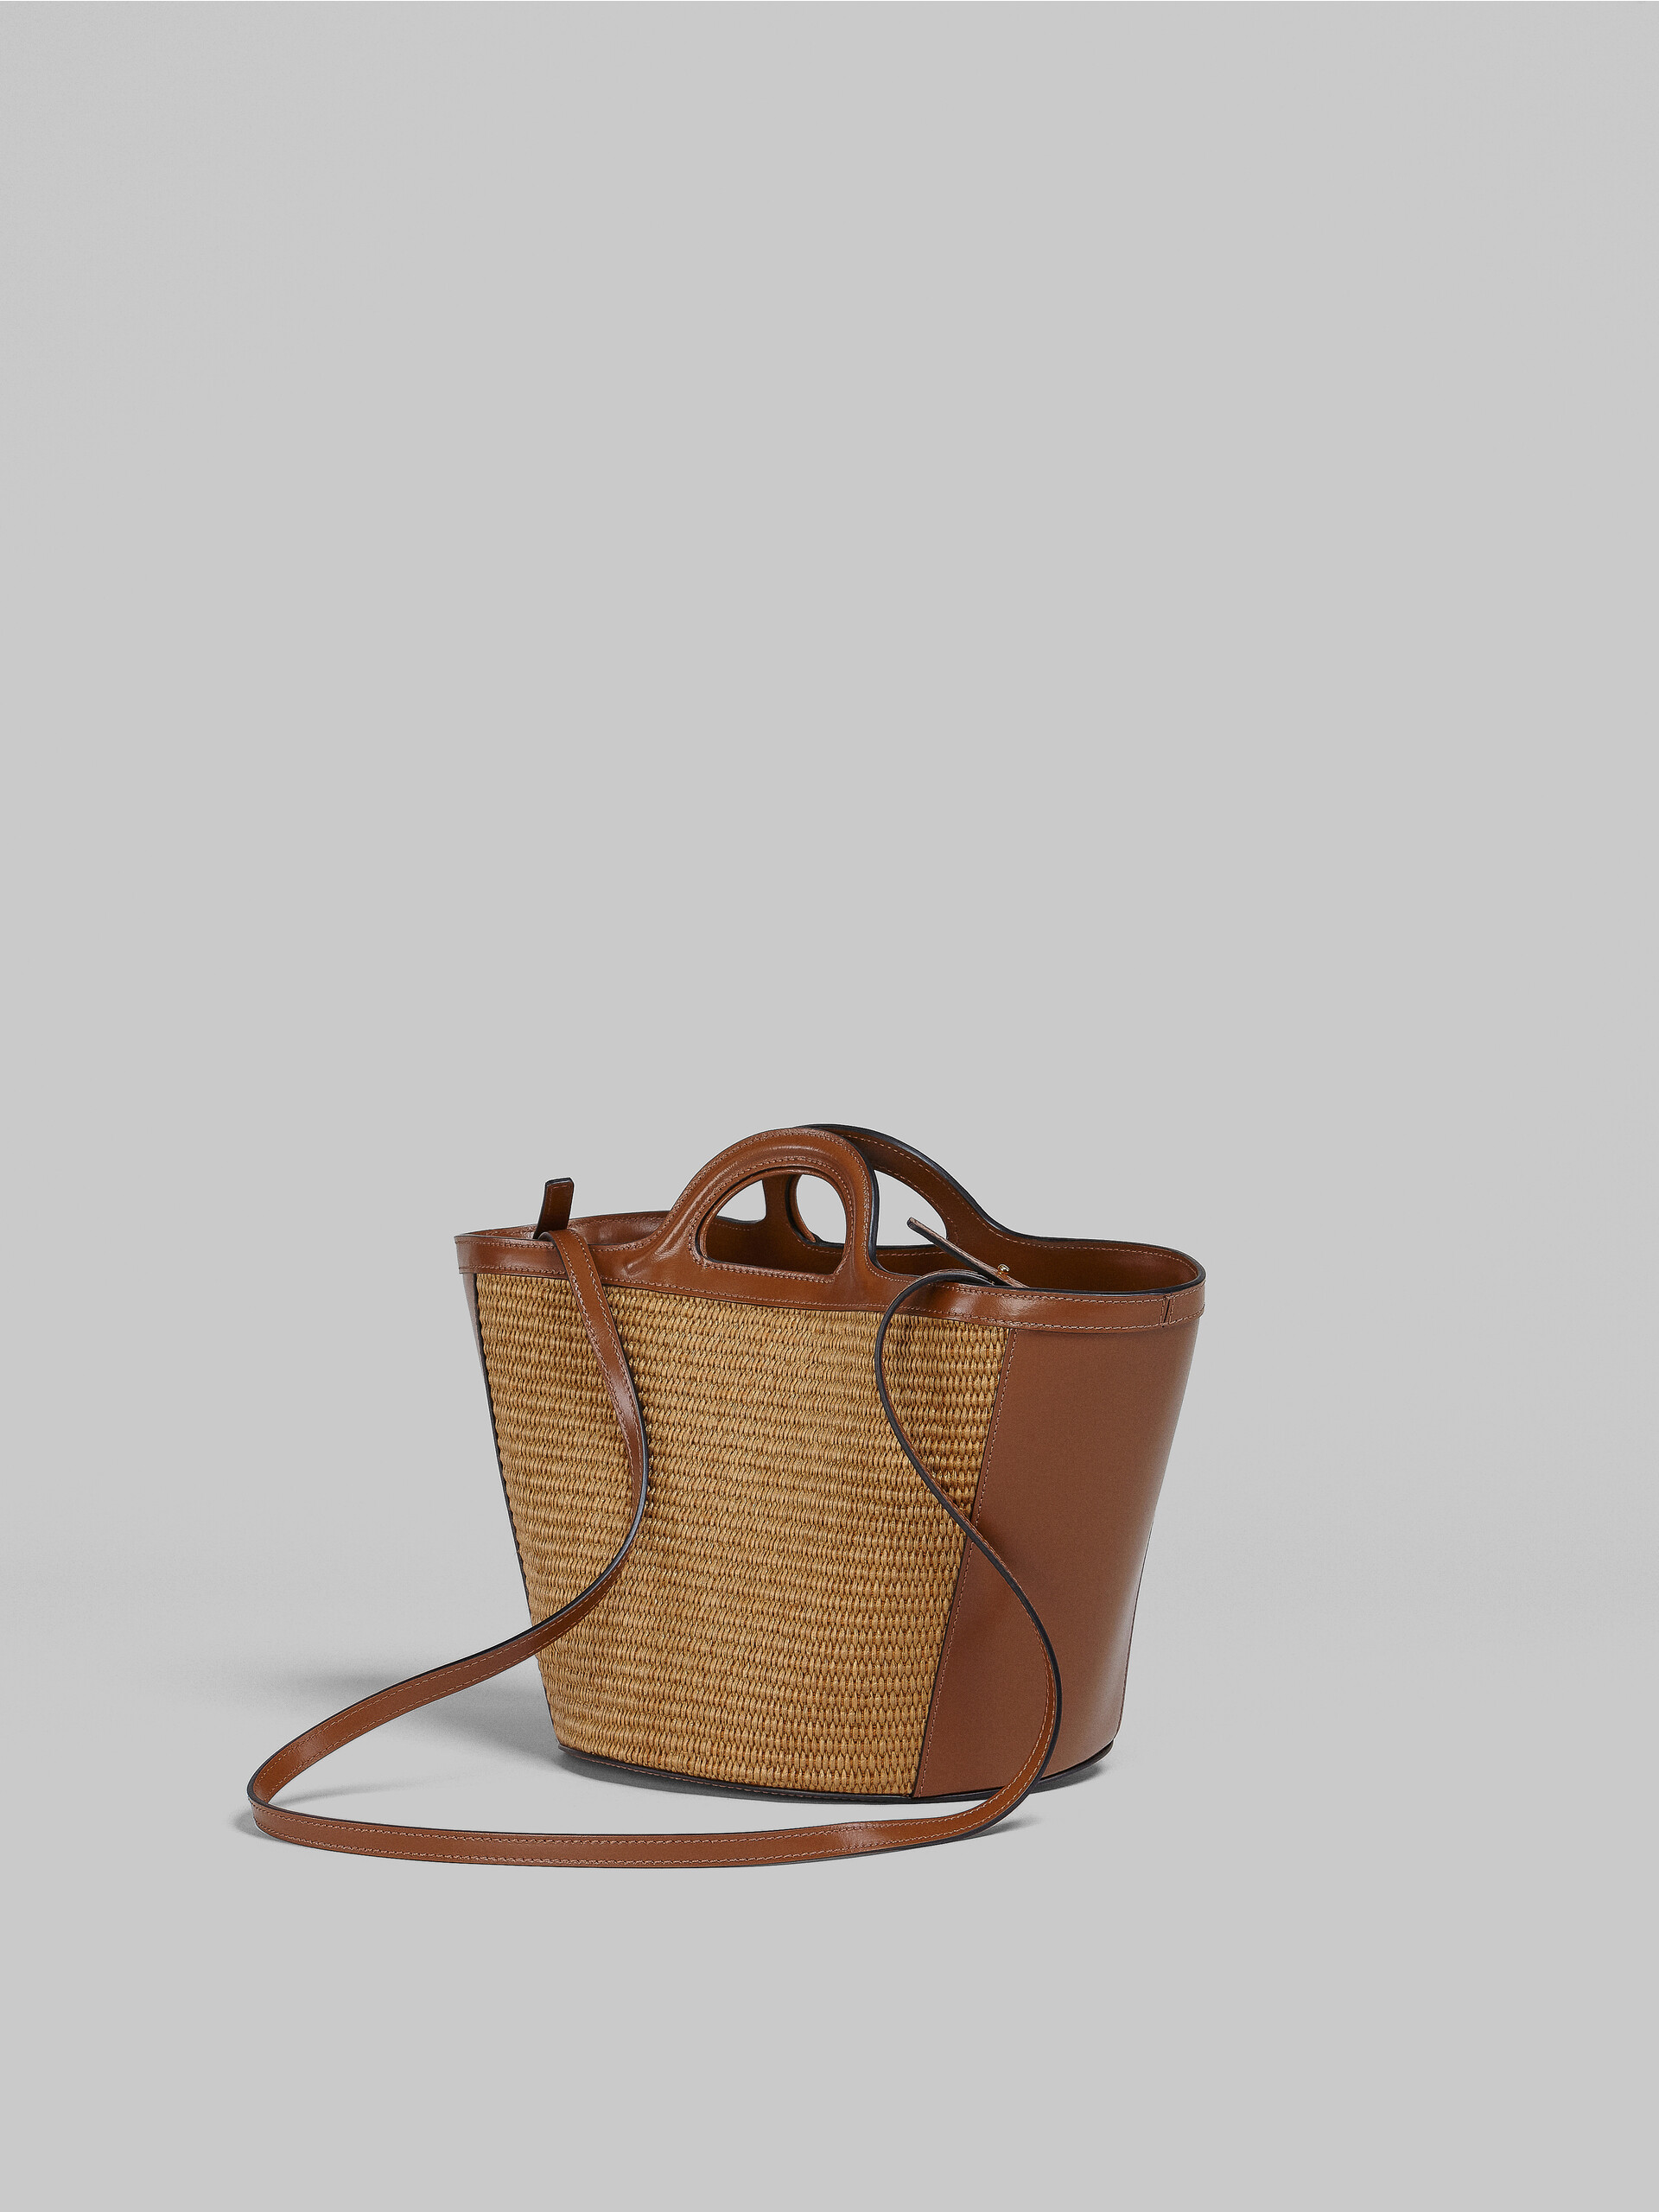 Brown leather small TROPICALIA SUMMER bag - Handbag - Image 3